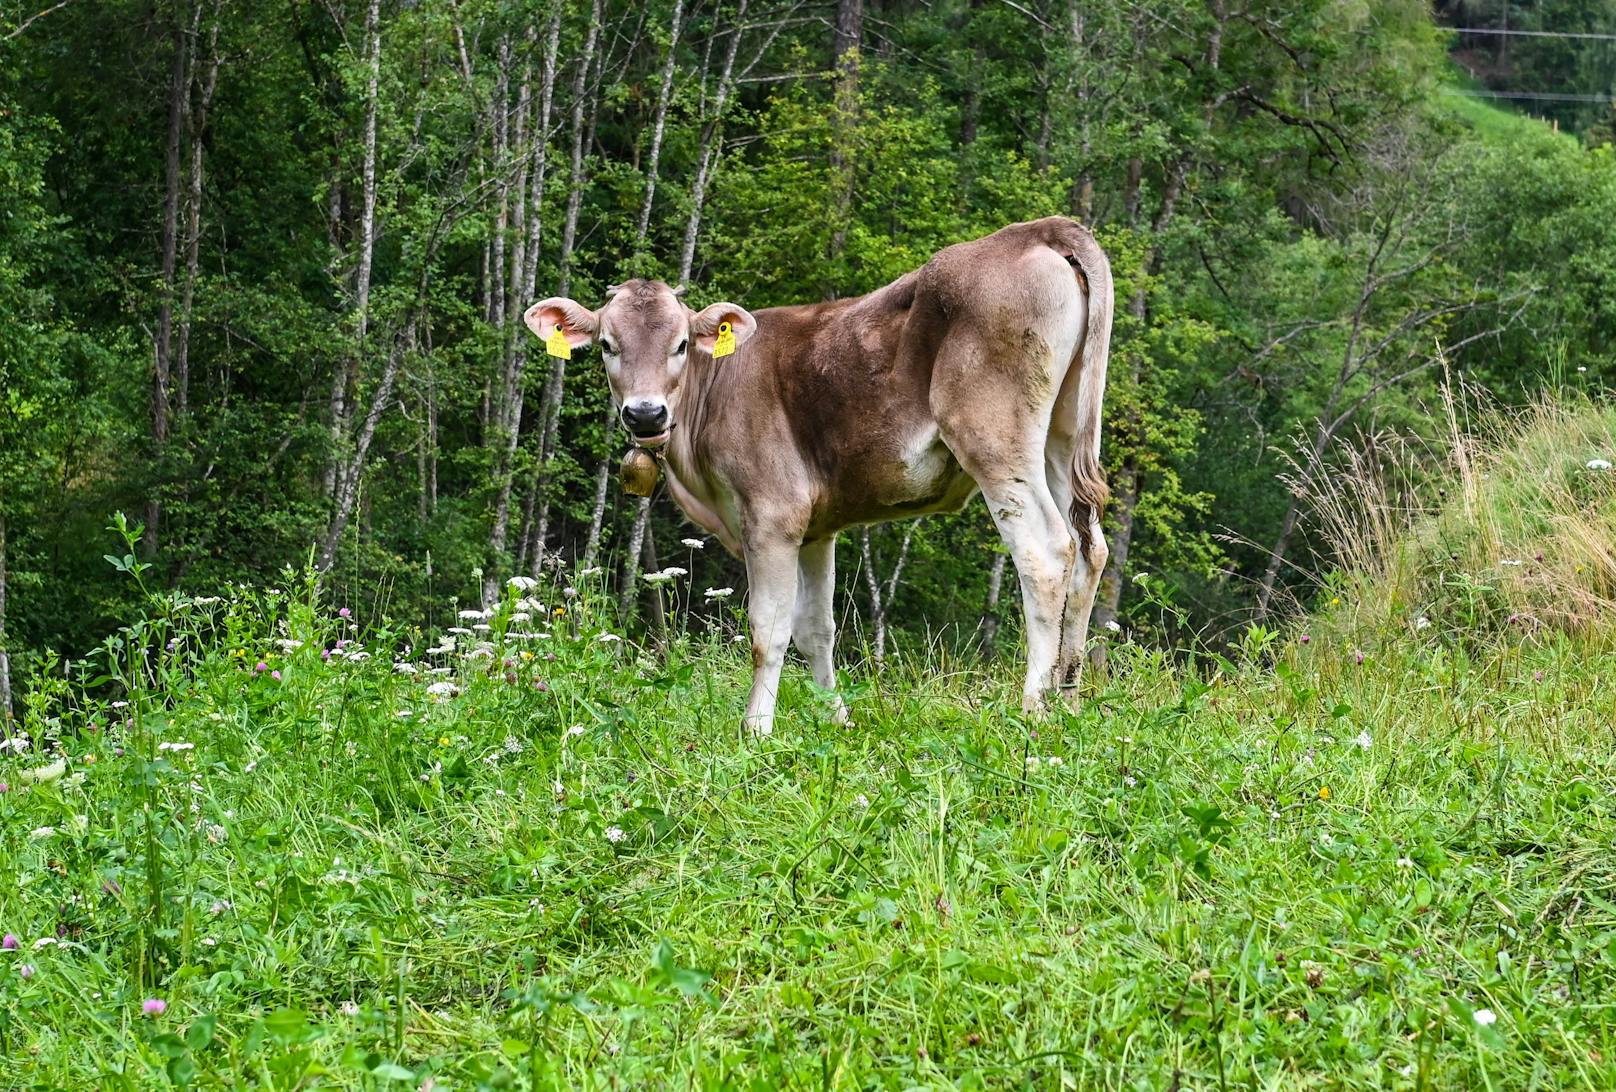 Blutiger Schock für einen Landwirten in der Tiroler Gemeinde Mieders. Unbekannte haben eines seiner Kälber auf der Weide geschlachtet (14. Juli 2020)